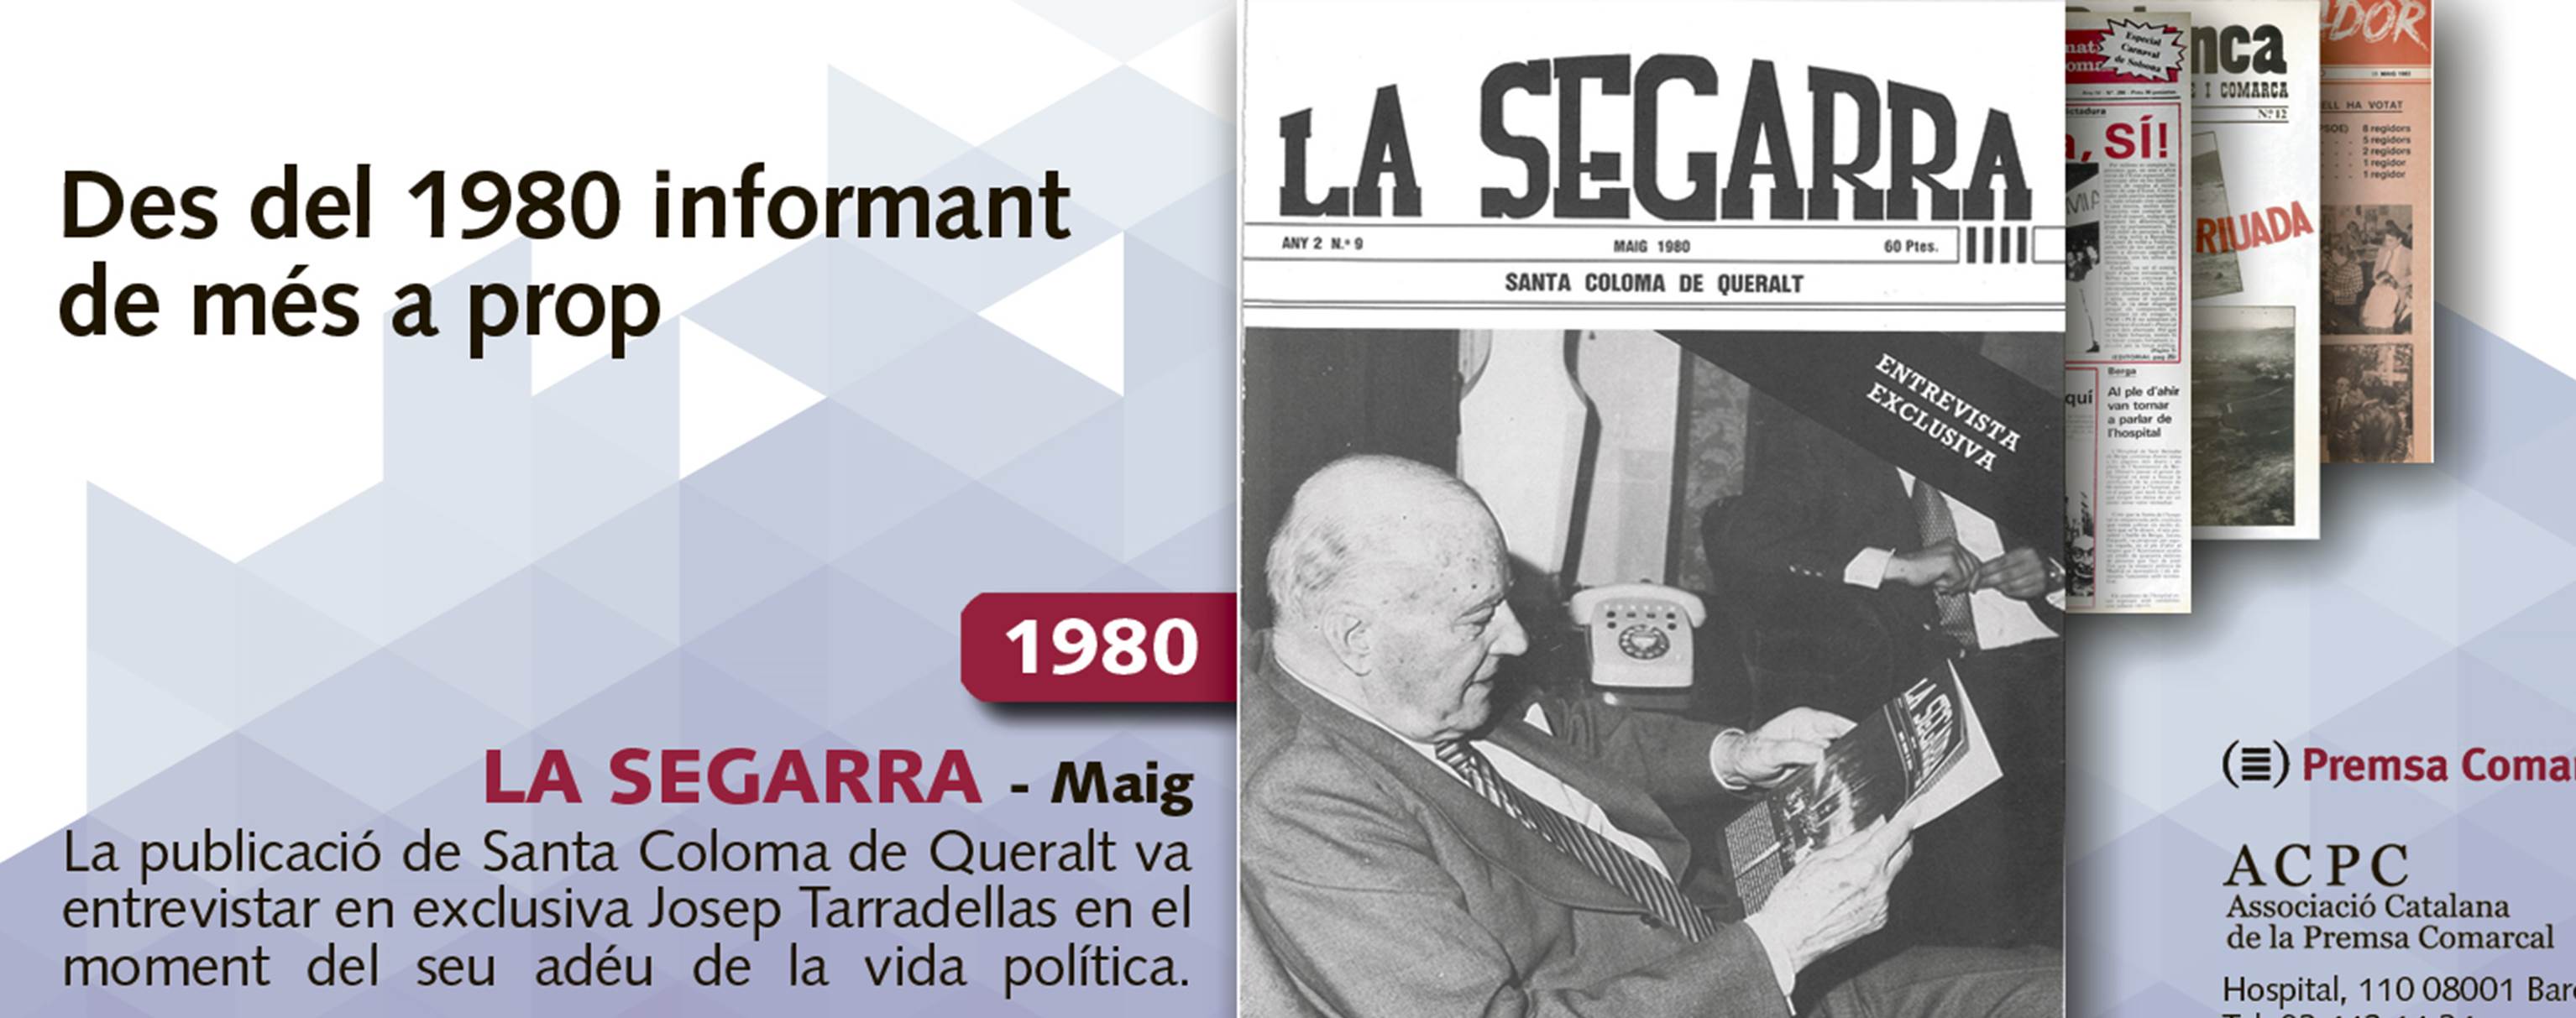 Josep Tarradellas entrevistat a 'La Segarra' el 1980, tret de sortida a la campanya de portades de l'ACPC